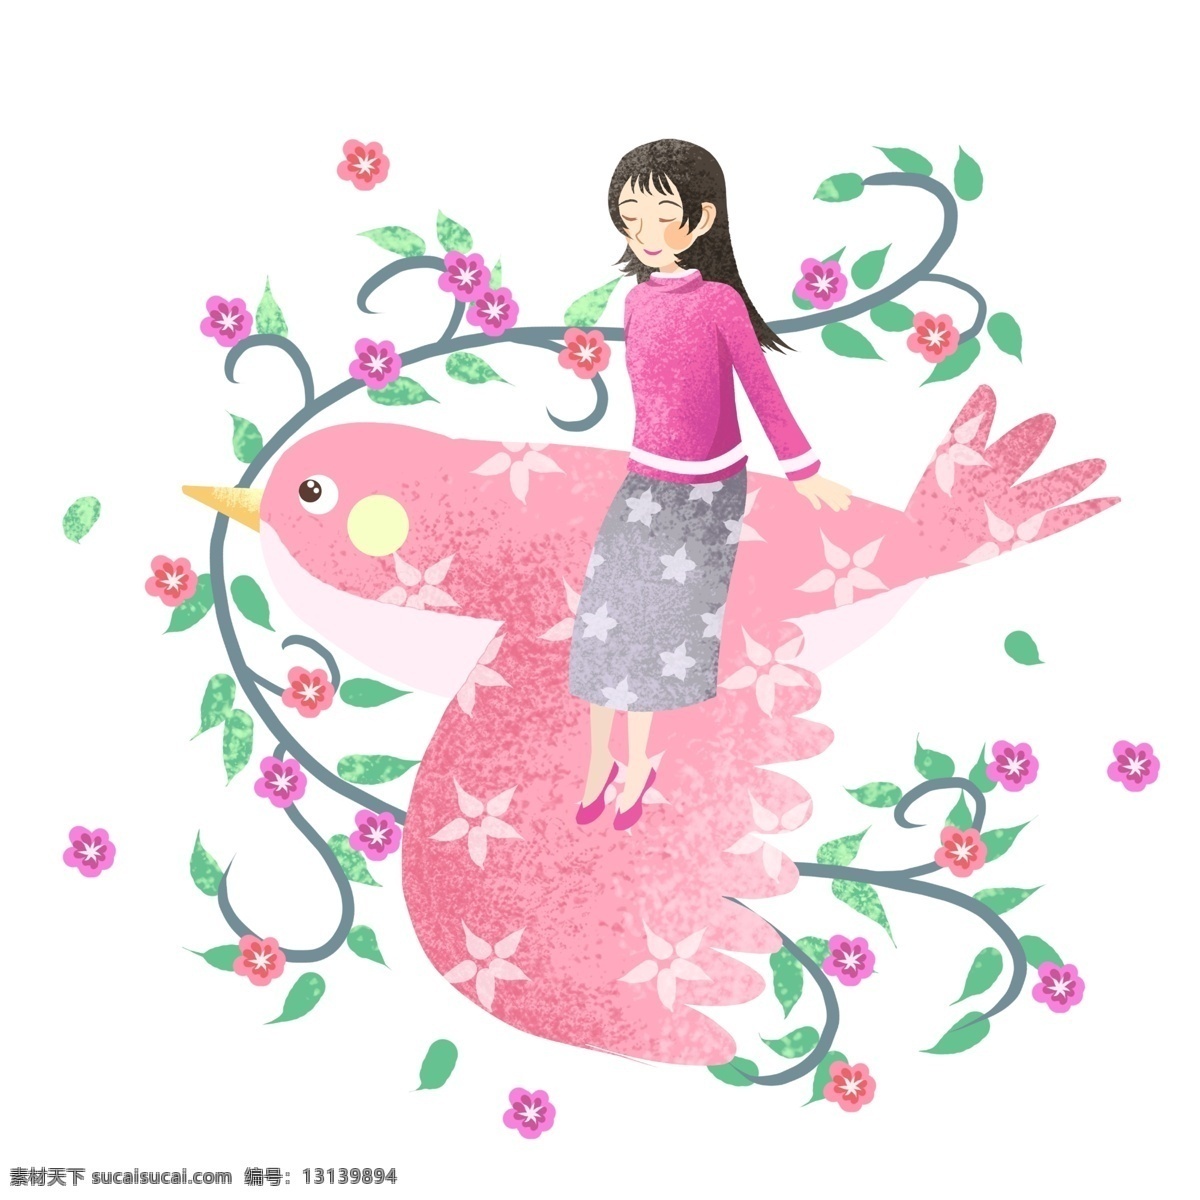 踏青 坐在 小鸟 女孩 踏青人物插画 坐在小鸟女孩 粉色的小鸟 红色的小花 绿色的叶子 植物装饰